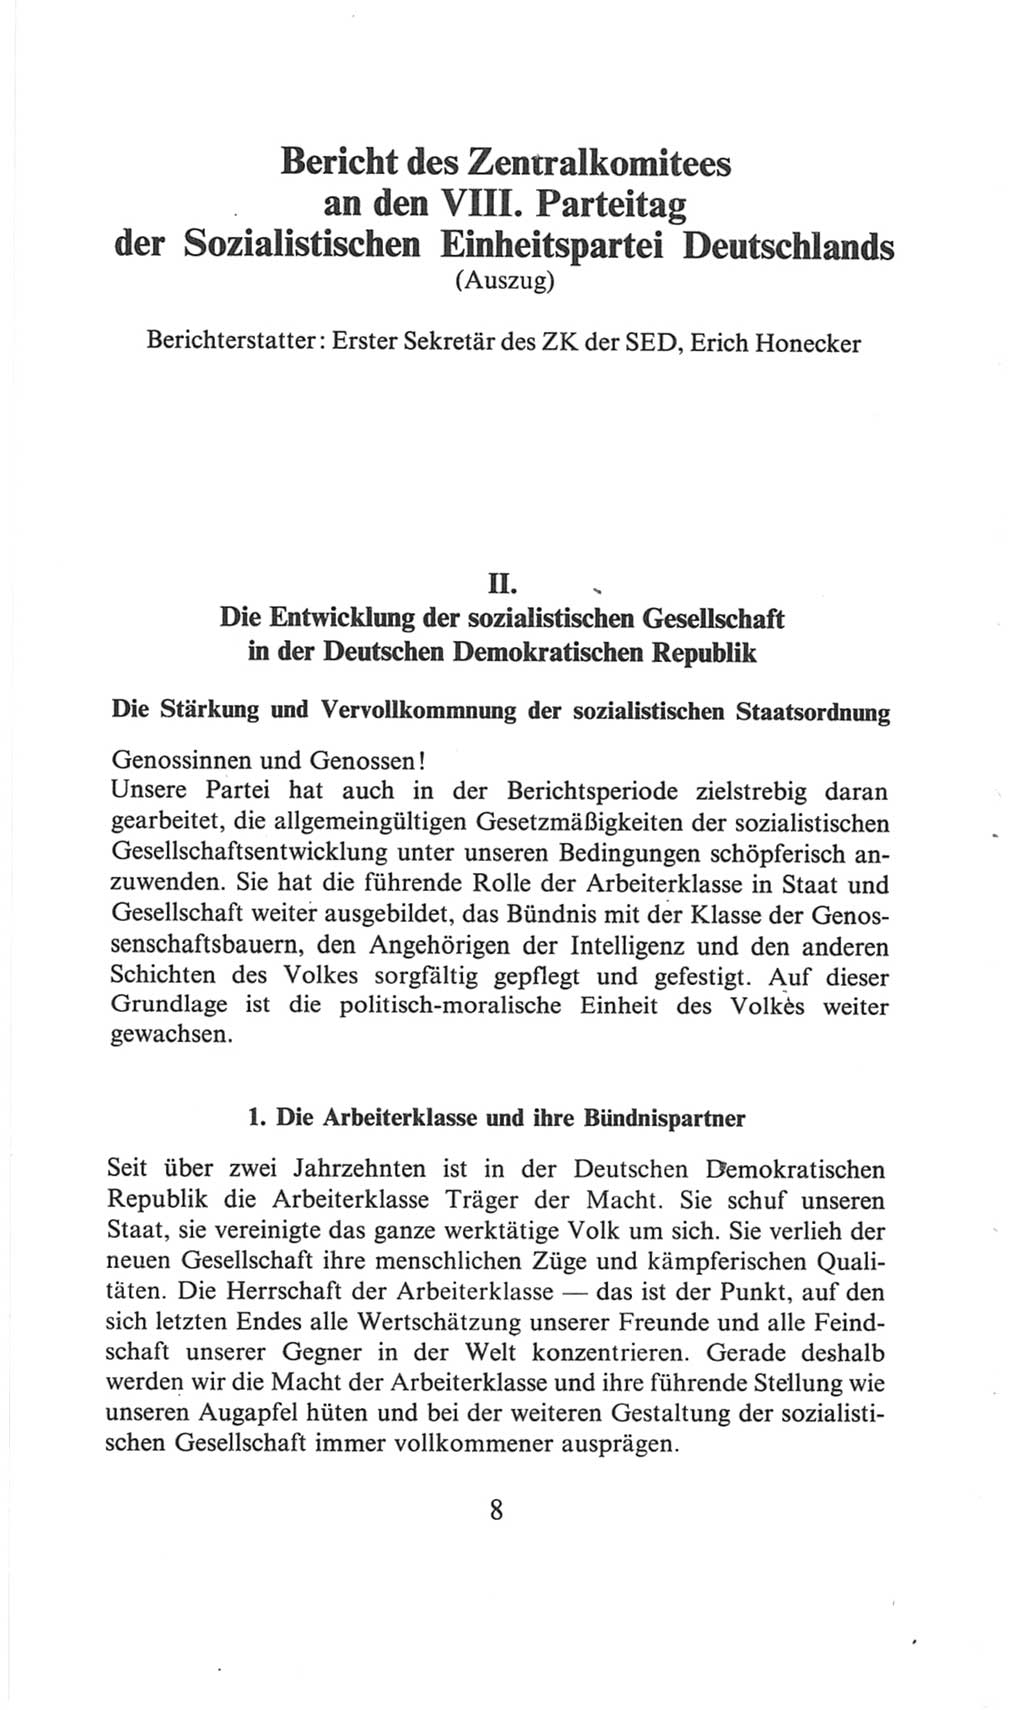 Volkskammer (VK) der Deutschen Demokratischen Republik (DDR), 6. Wahlperiode 1971-1976, Seite 8 (VK. DDR 6. WP. 1971-1976, S. 8)